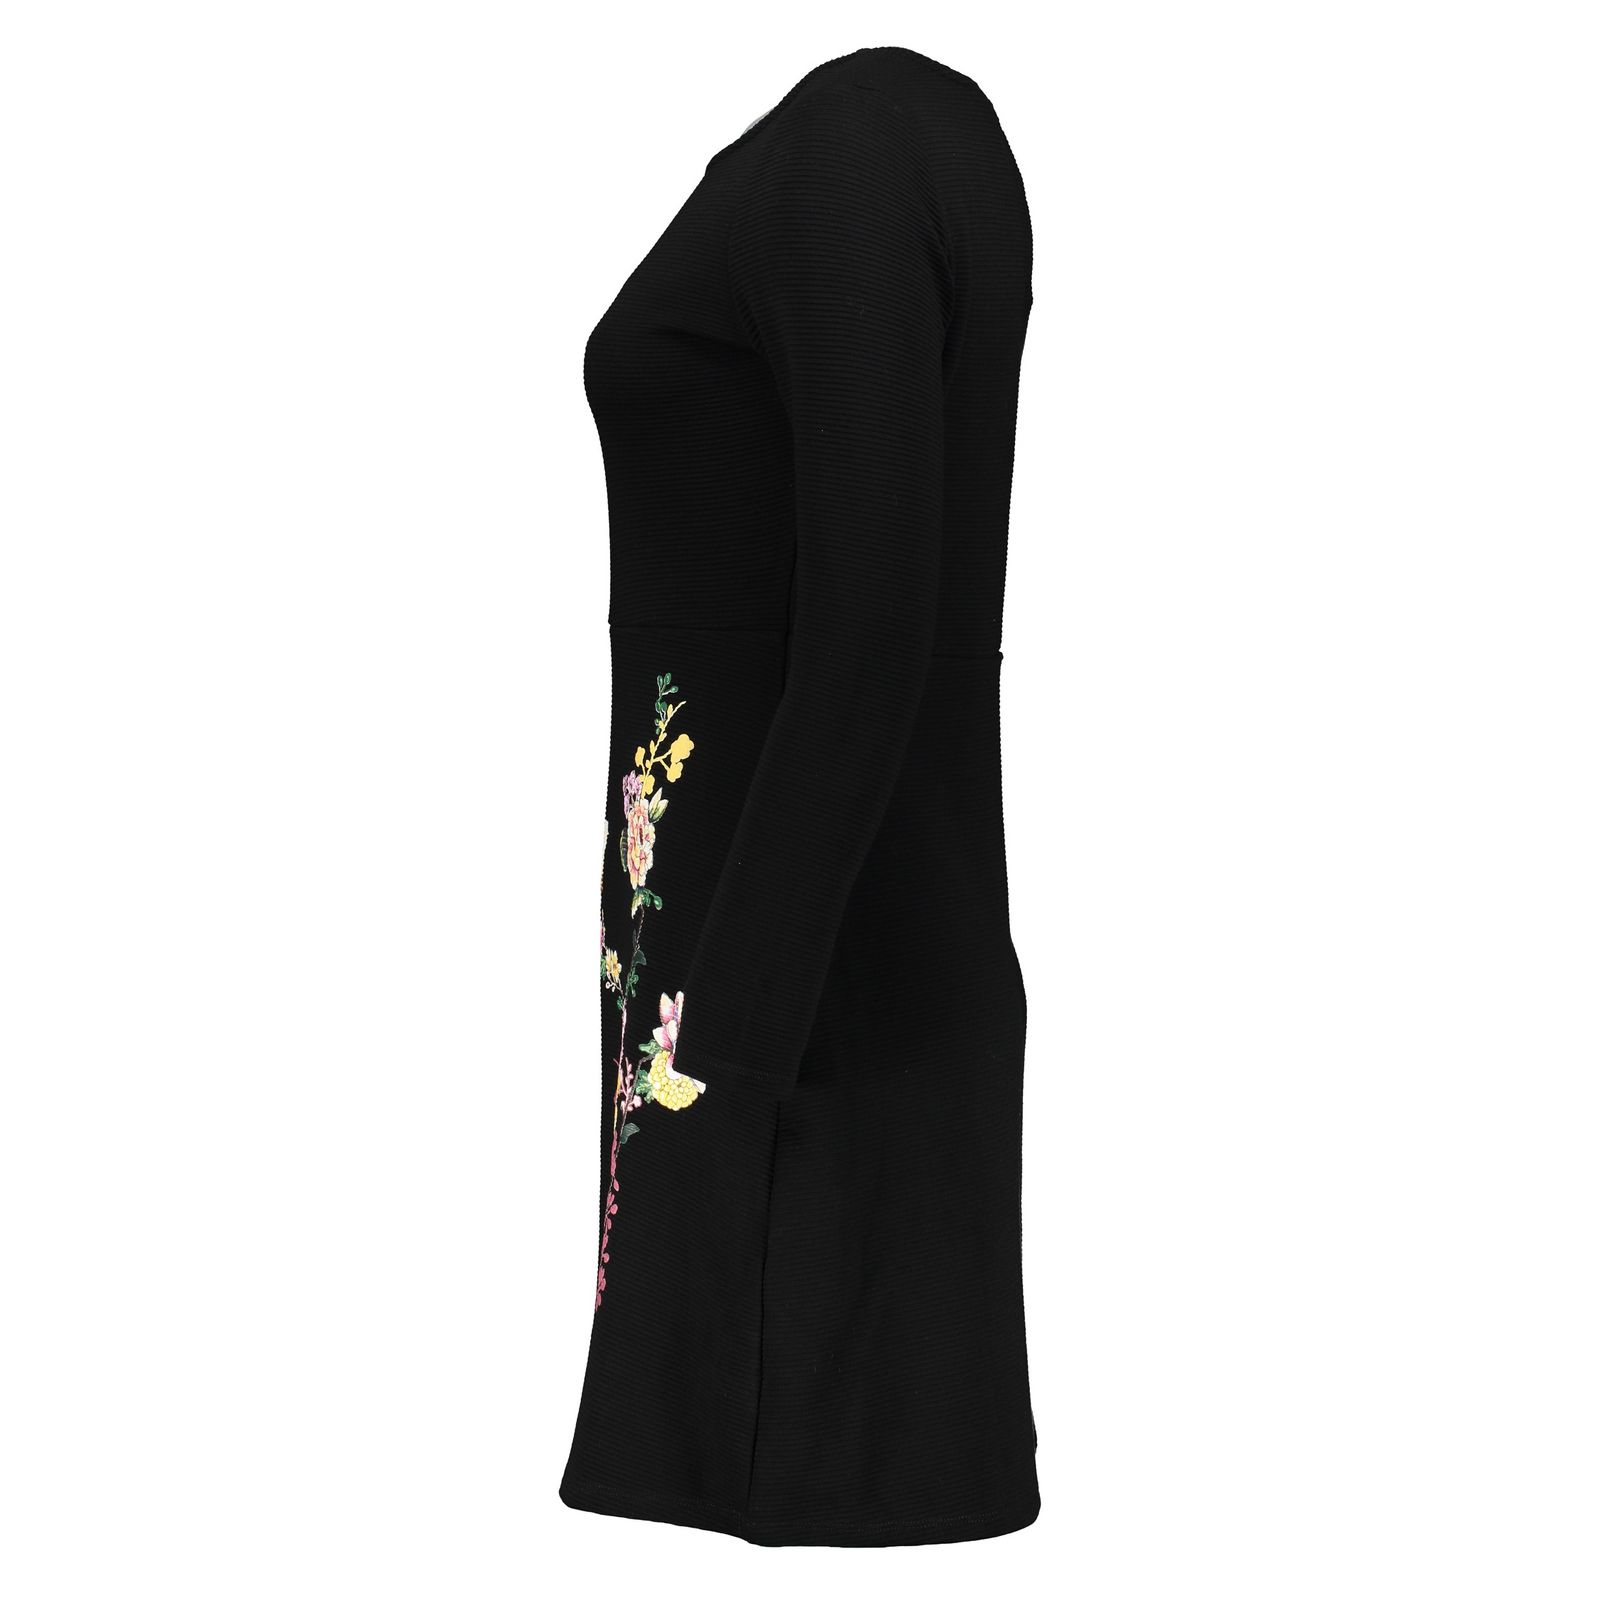 پیراهن زنانه اسپرینگ فیلد مدل 8953562-BLACK - مشکی - 3